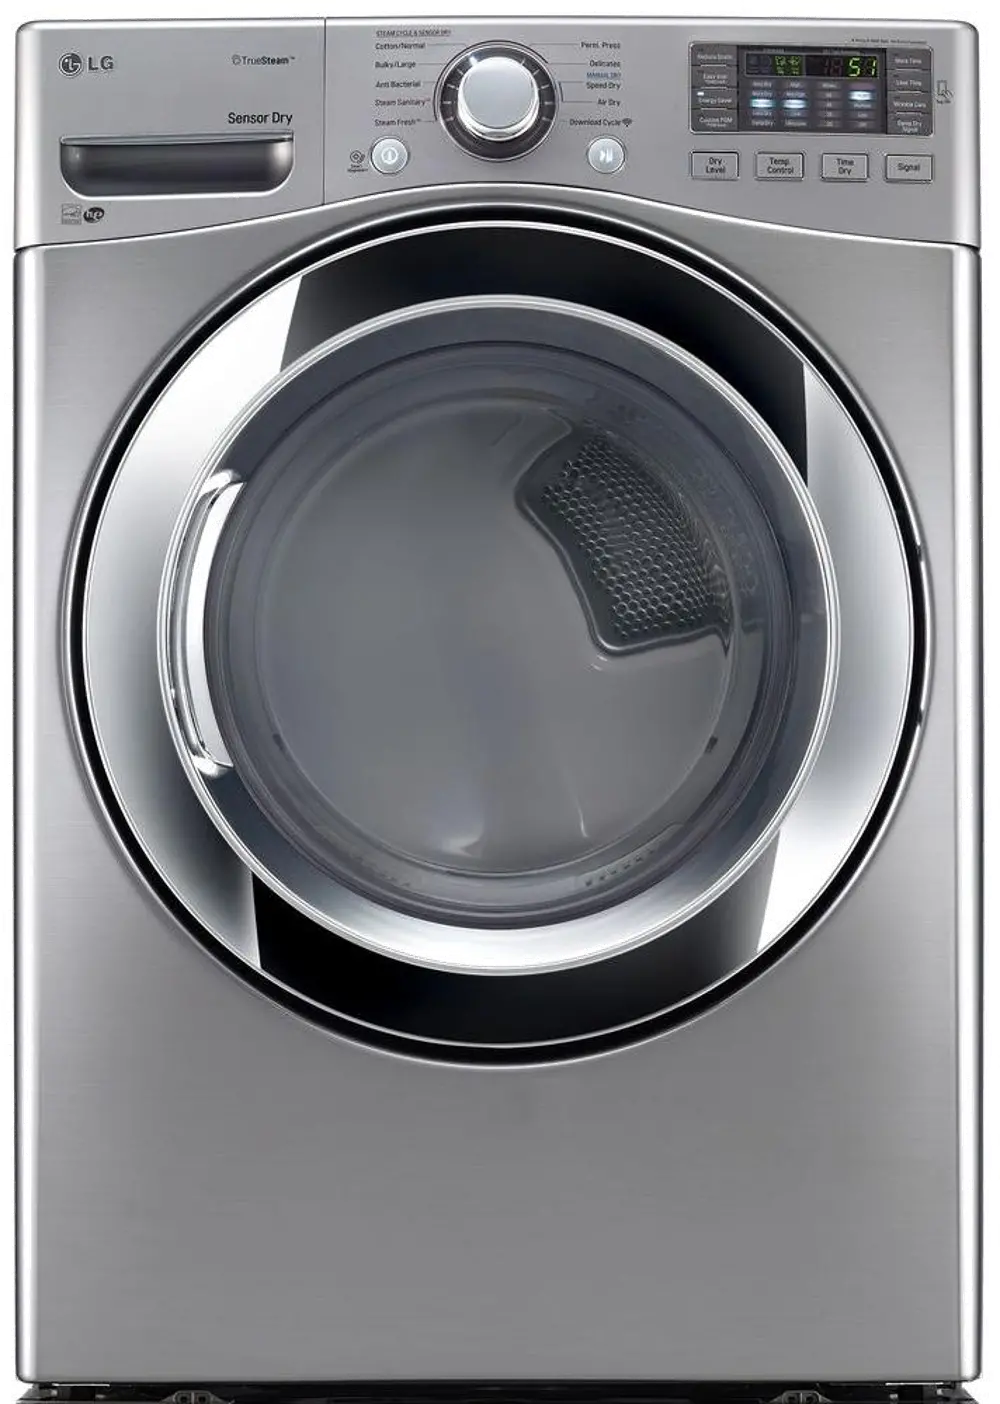 DLGX3371V LG Gas Dryer with Tru-steam - 7.4 cu. ft. Graphite Steel-1